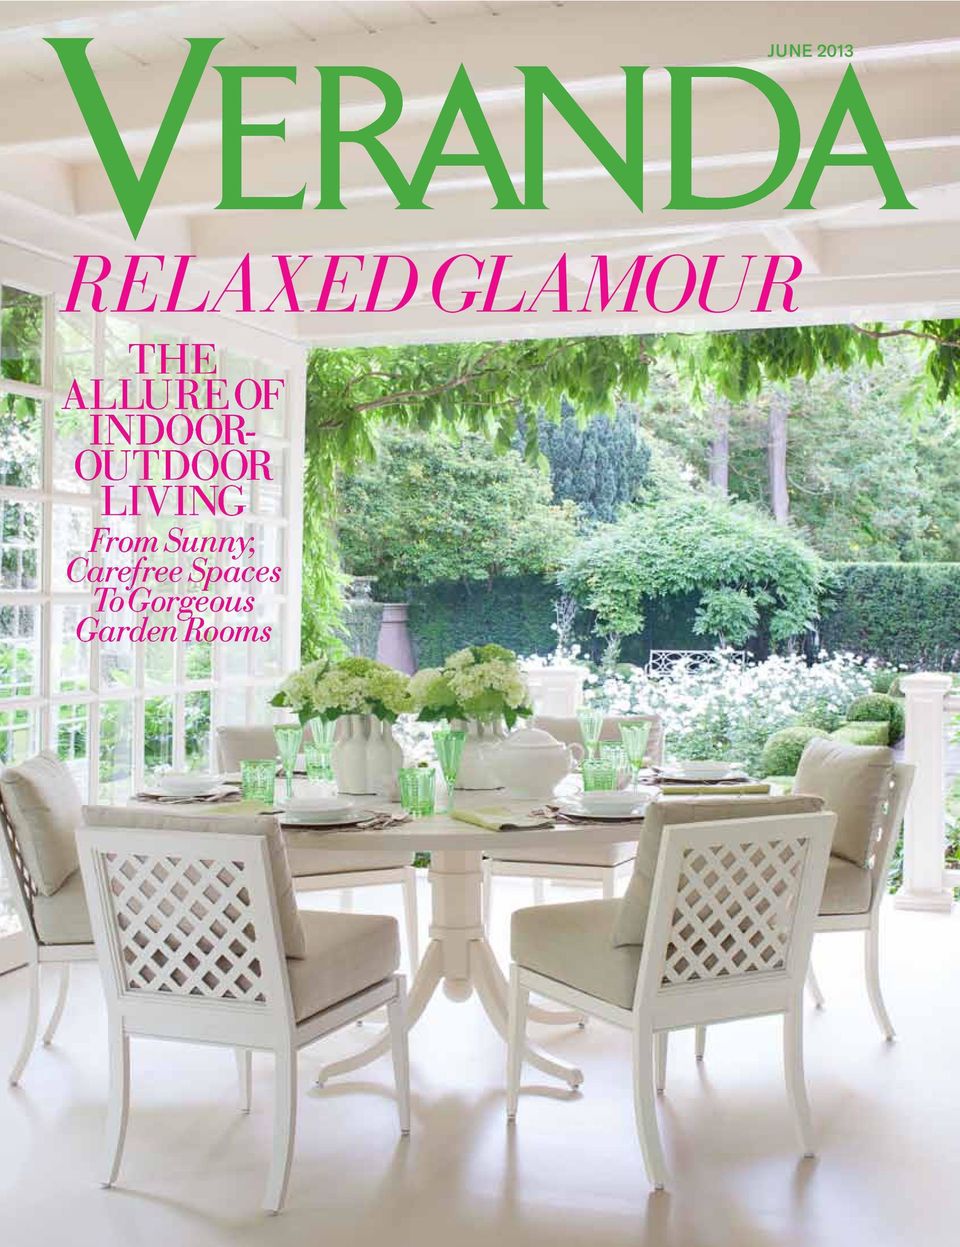 Veranda May/June issue